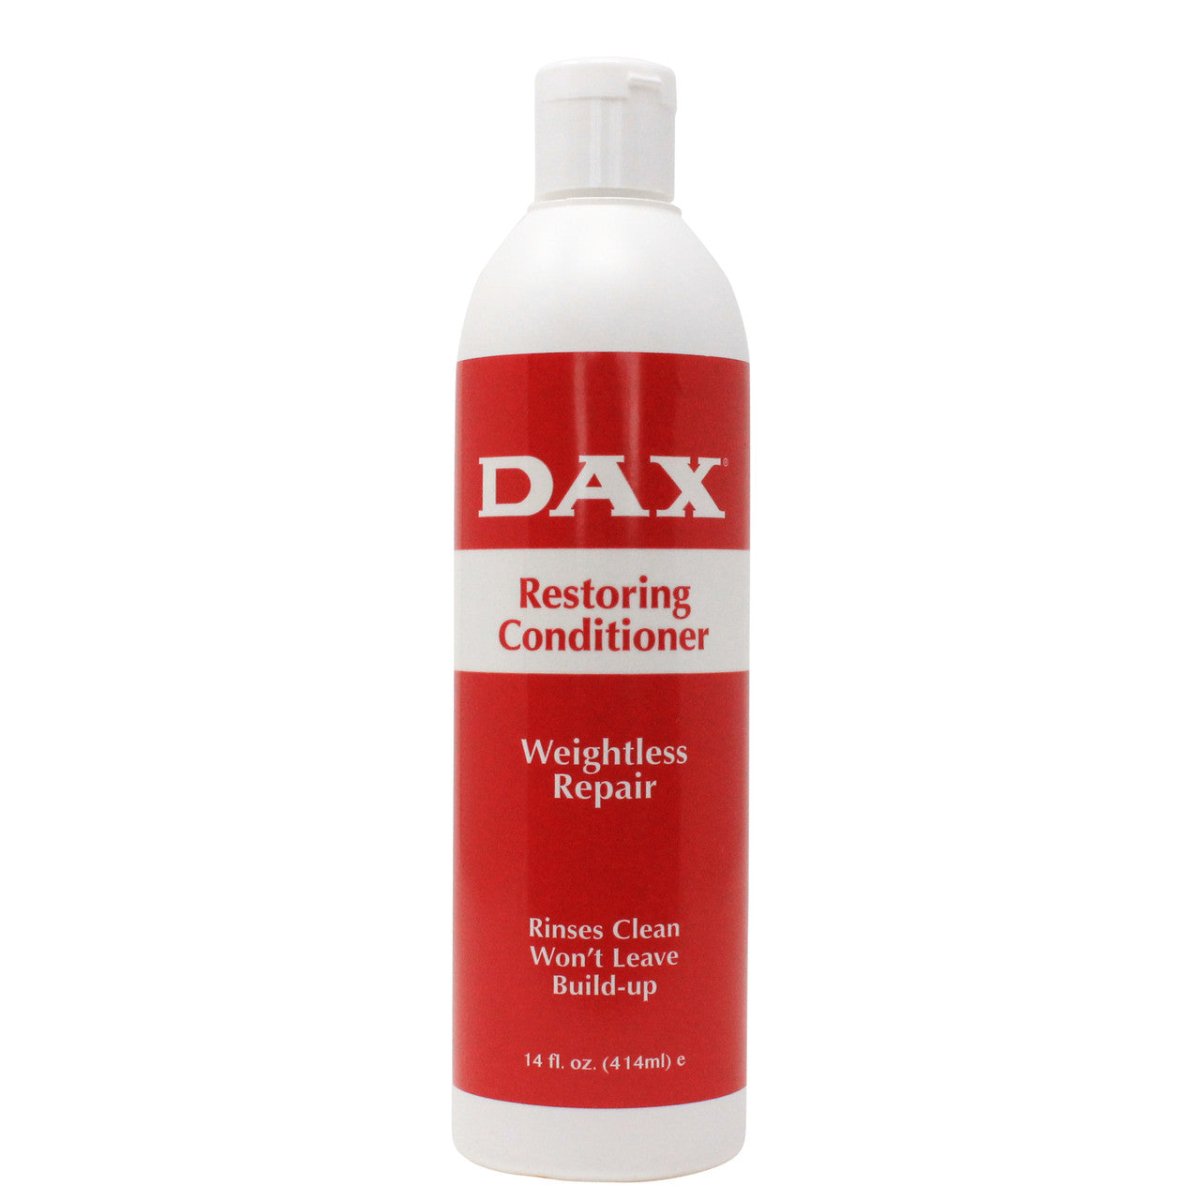 Dax Restoring Conditioner - Southwestsix Cosmetics Dax Restoring Conditioner DAX Southwestsix Cosmetics 077315000650 Dax Restoring Conditioner